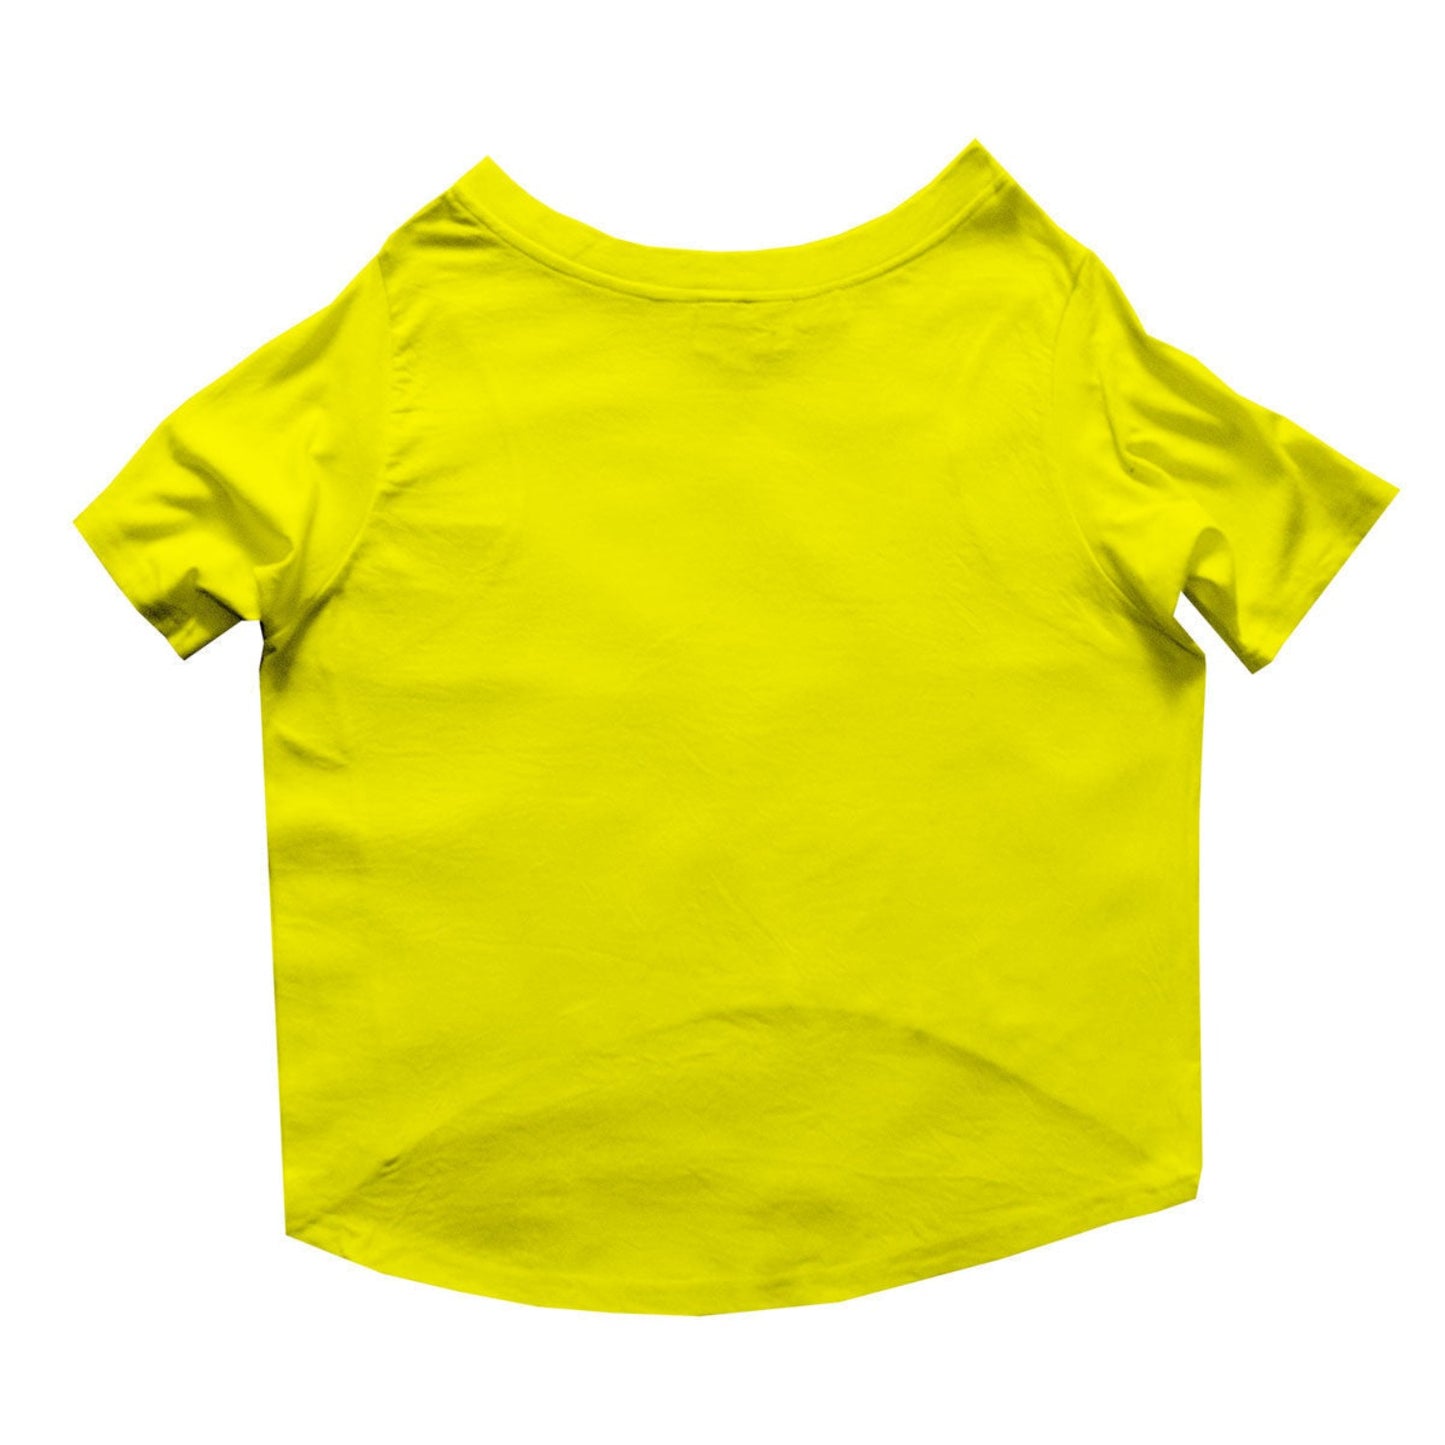 Ruse / Yellow Ruse Basic Crew Neck "FOODIE? FOODIE." Printed Half Sleeves Dog Tee21